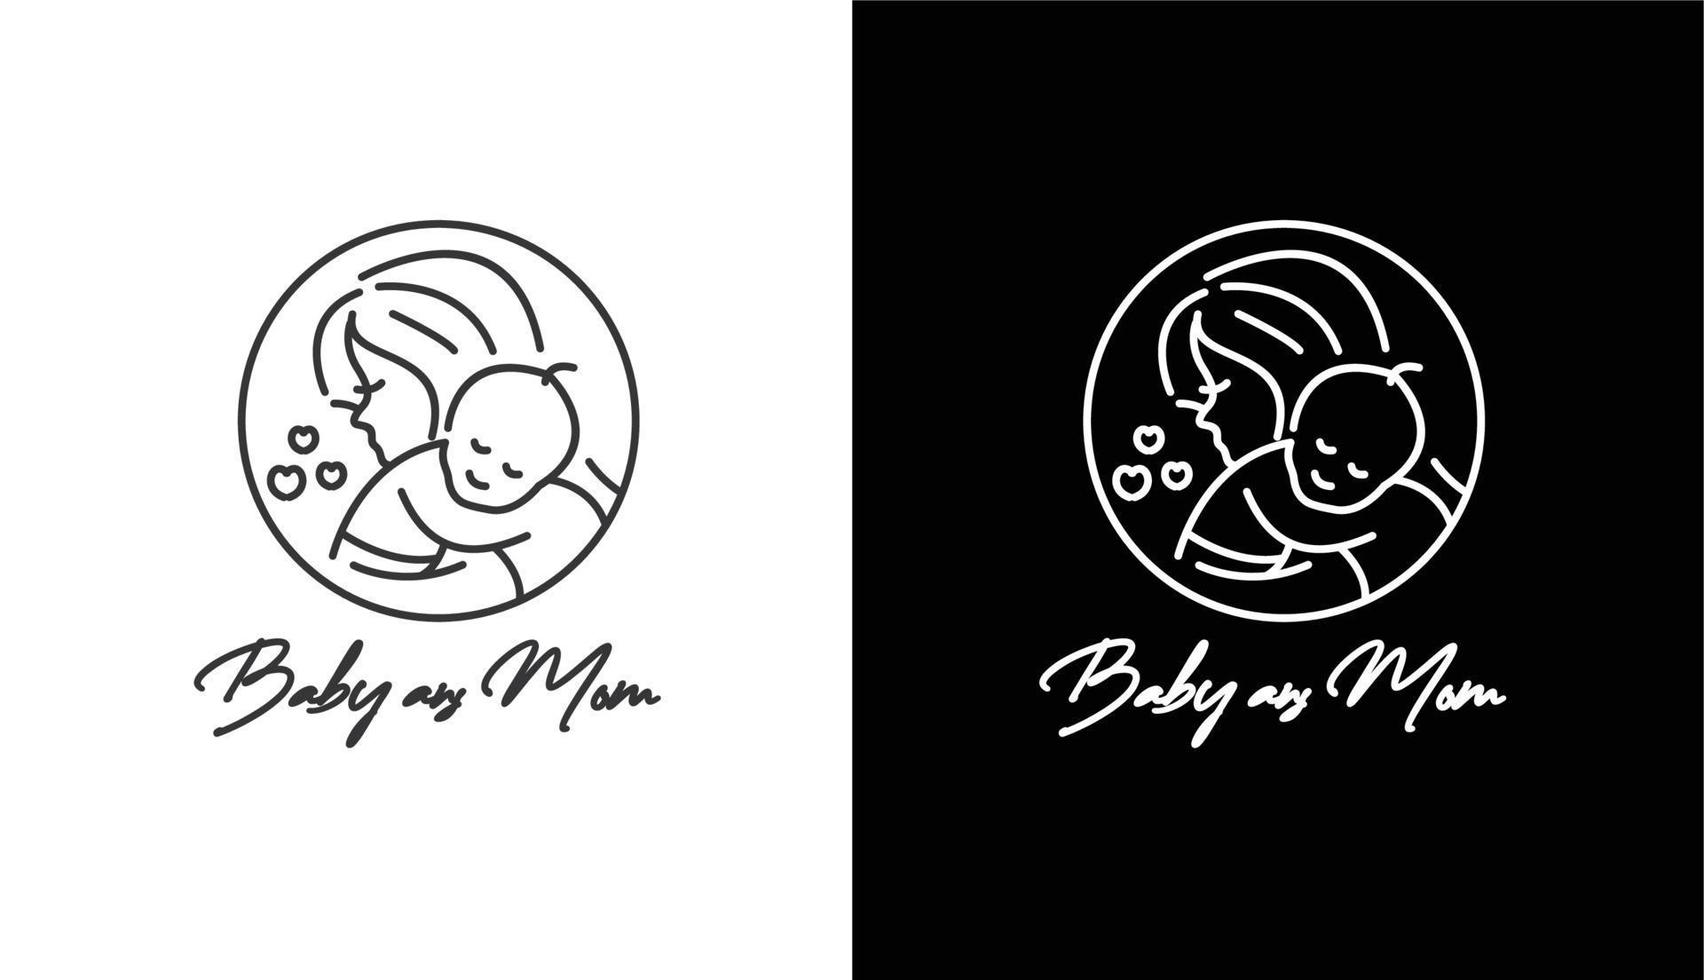 klassische monoline logo frau und baby, vintage logo für markenlogovorlage für babysalongeschäft vektor